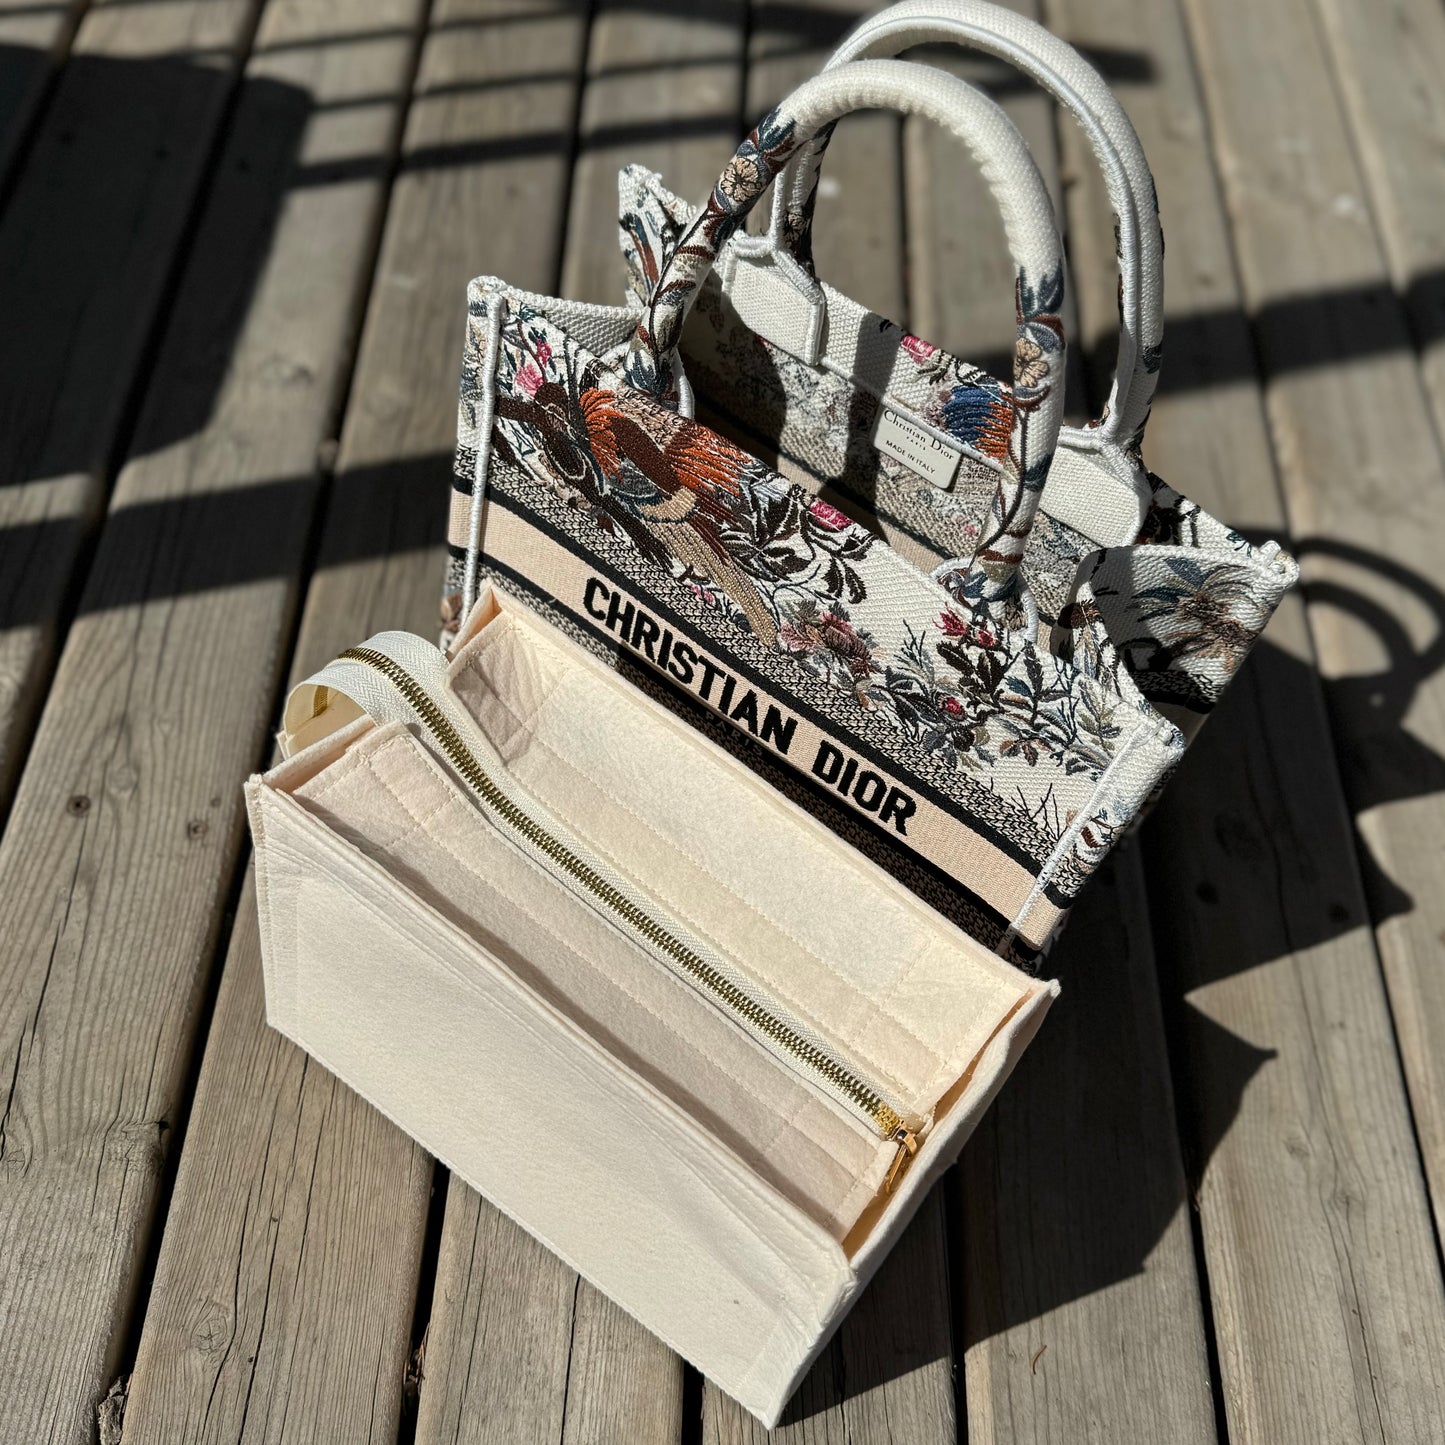 Christian Dior Jardin d'Hiver' Small Book Tote